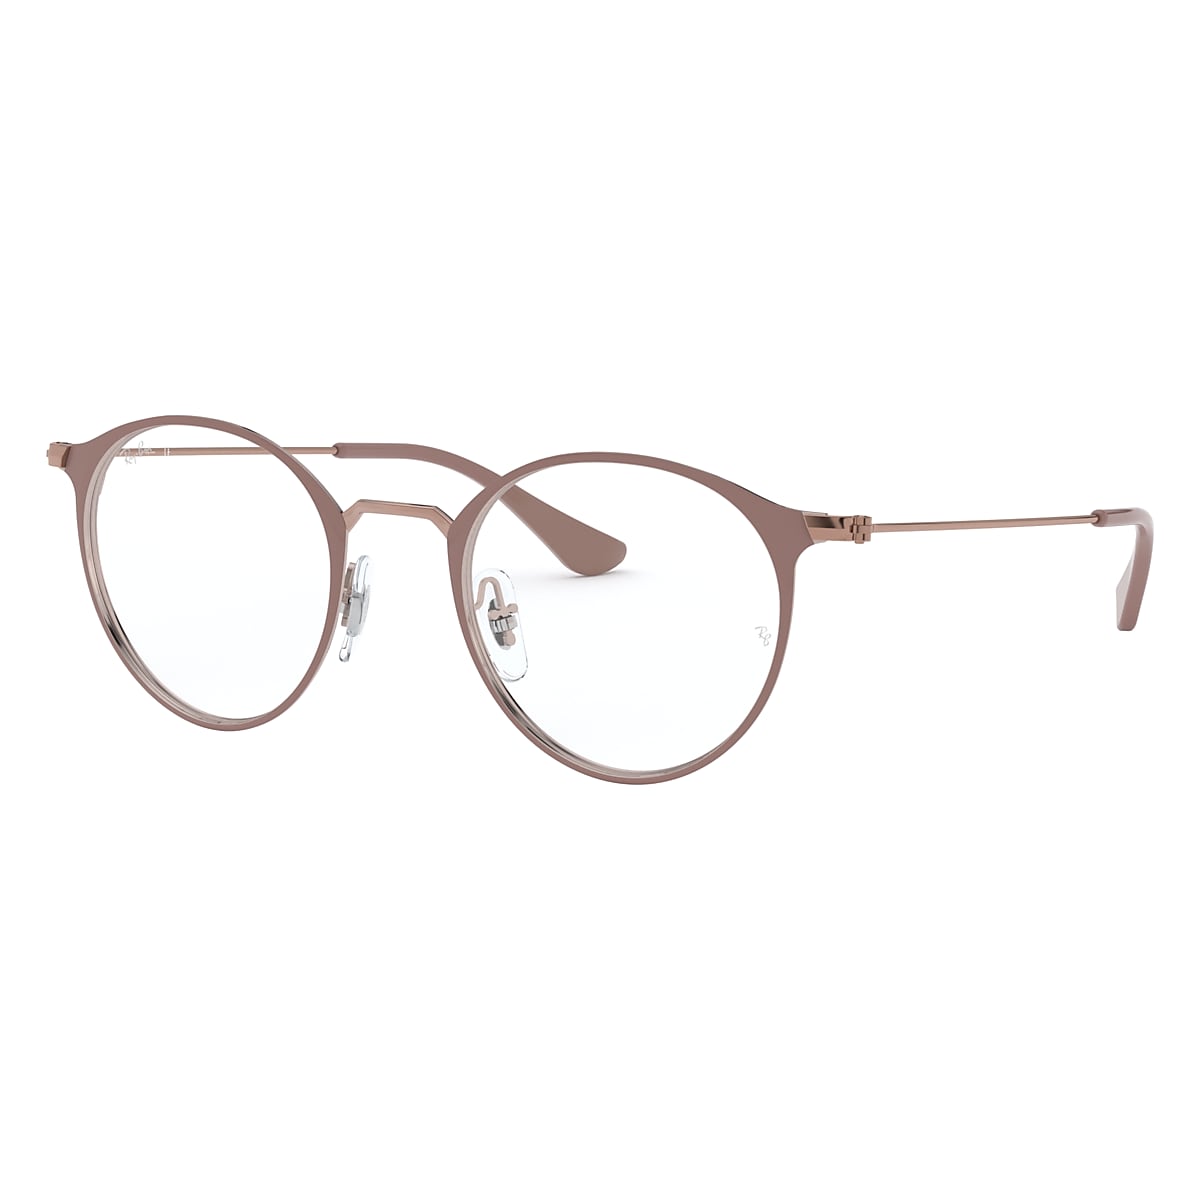 RB6378 OPTICS Eyeglasses with Light Brown Frame - RB6378 | Ray-Ban® US